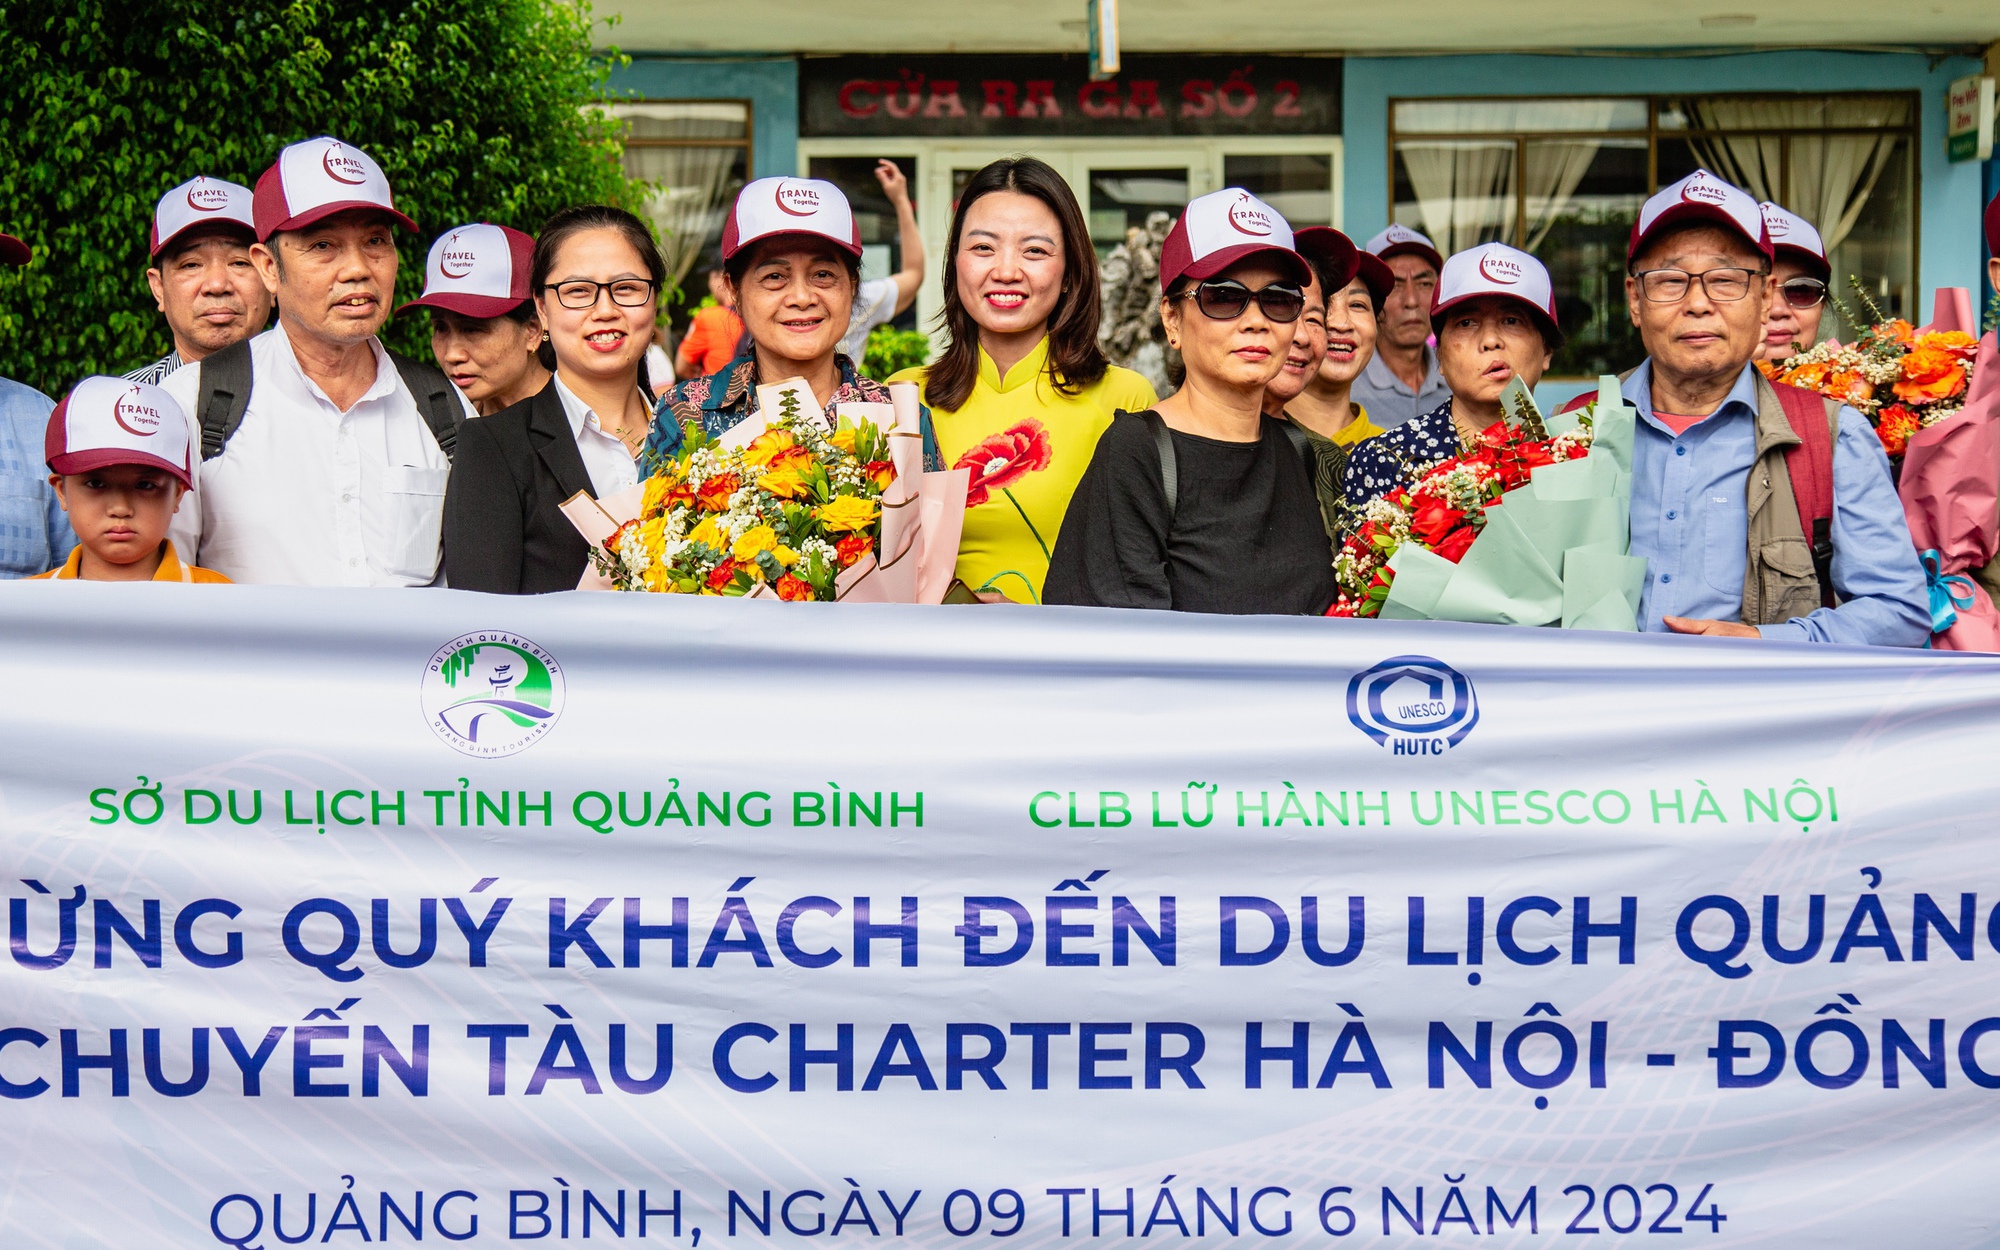 Hơn 300 khách đến Quảng Bình bằng tàu charter